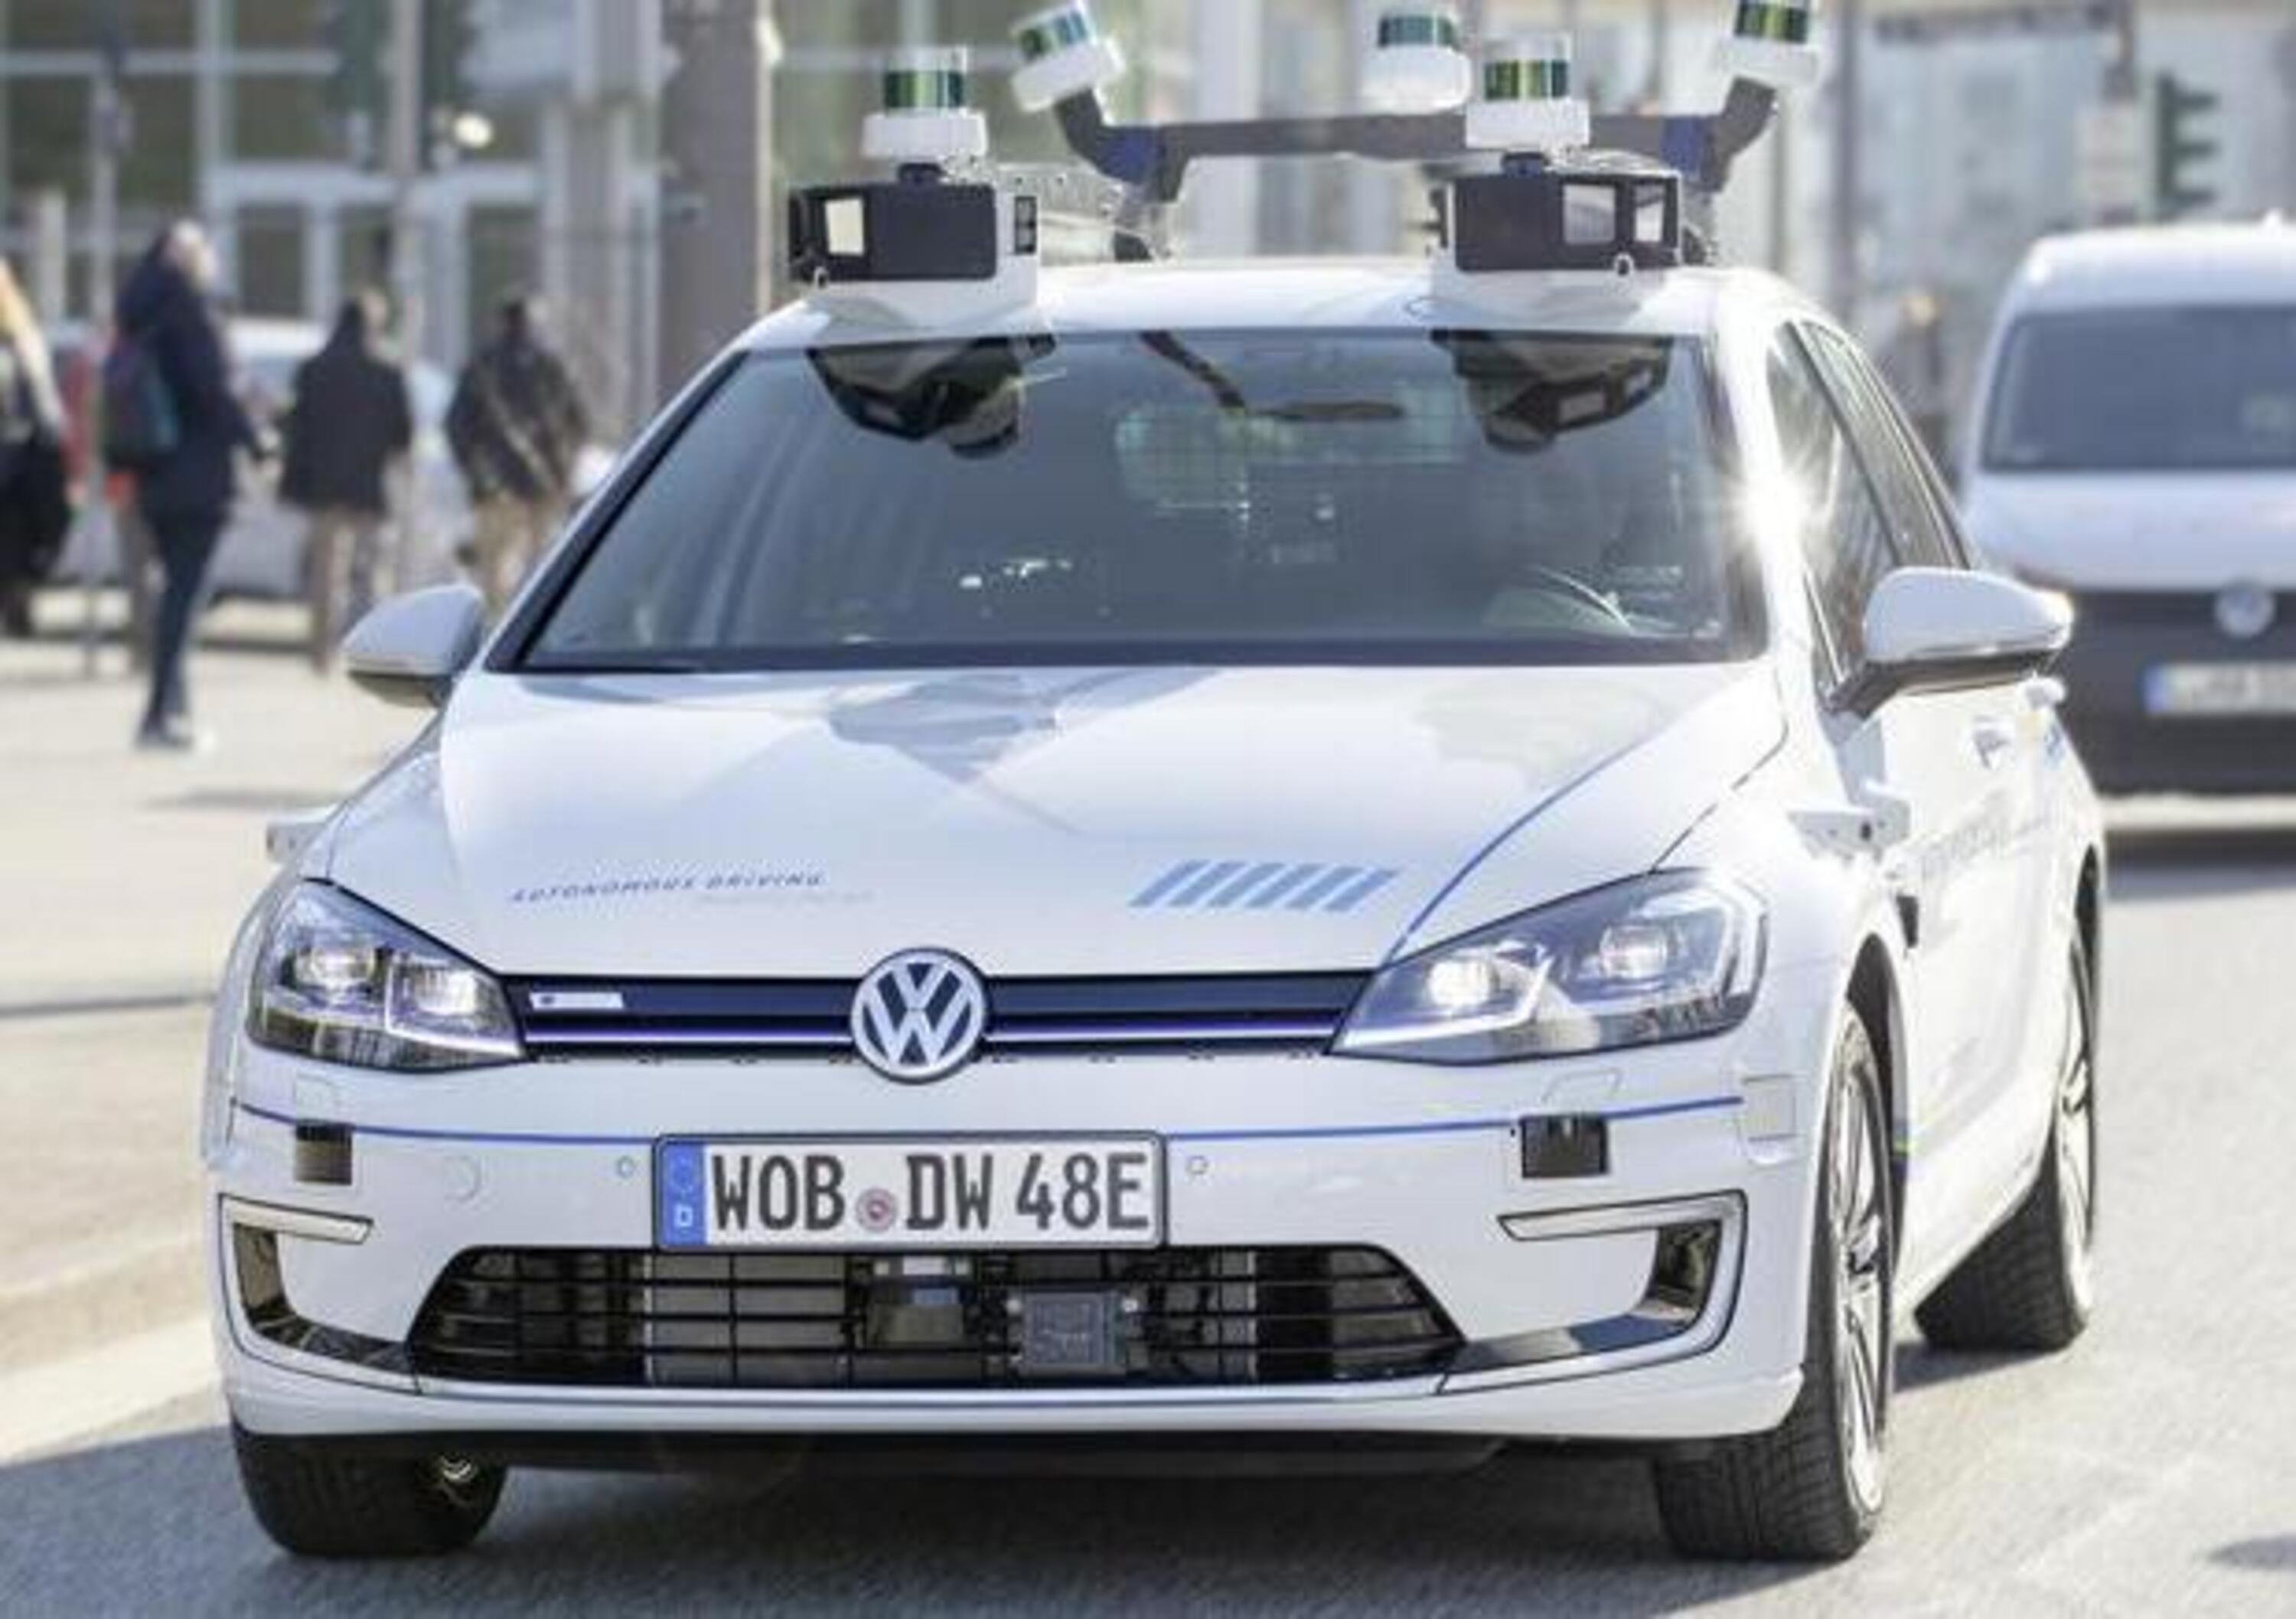 Volkswagen, al via i test per la guida autonoma di livello 4 